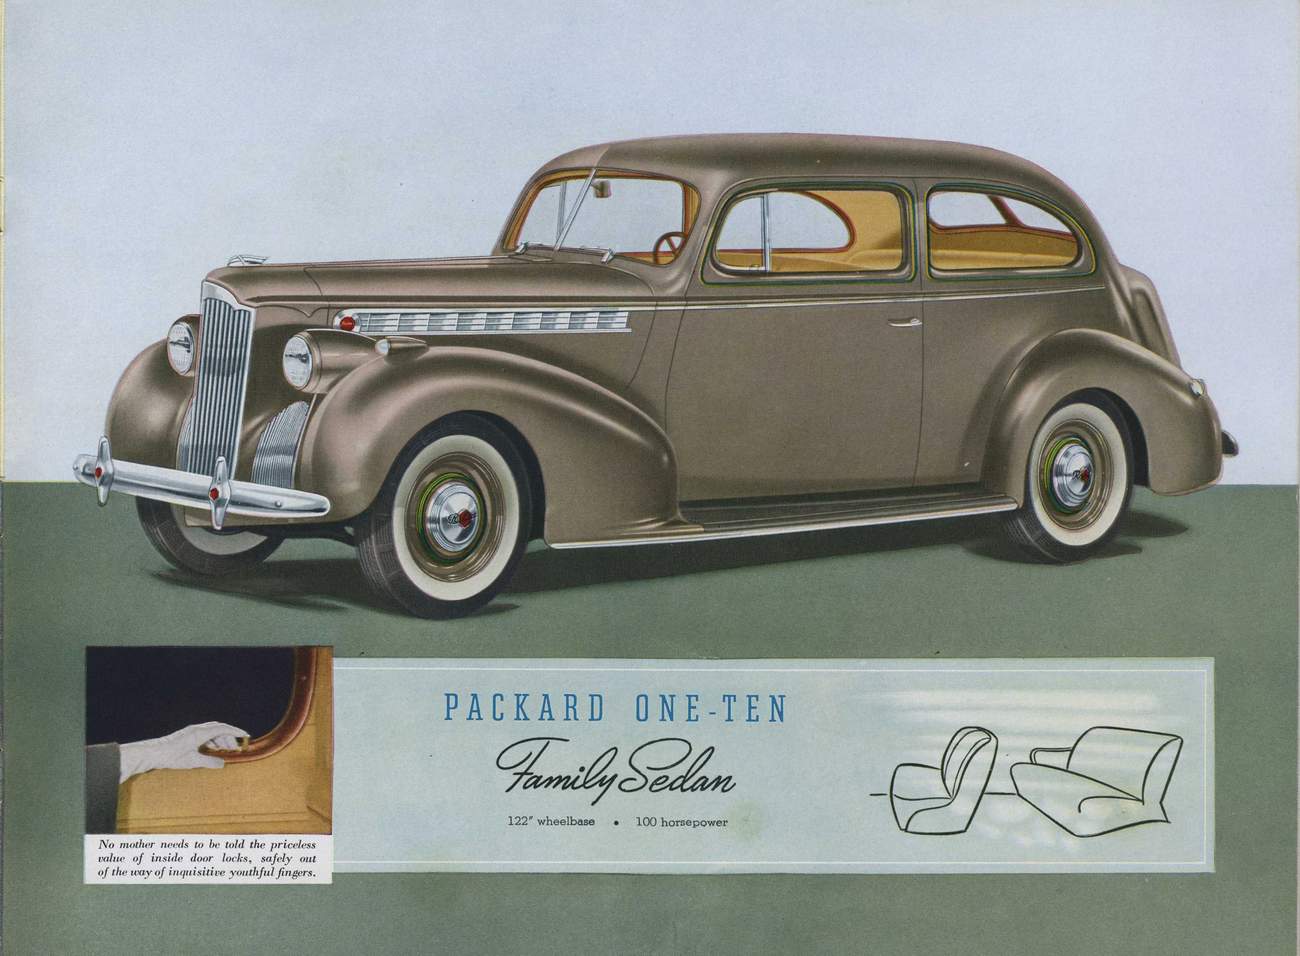 1940 Packard Prestige-19